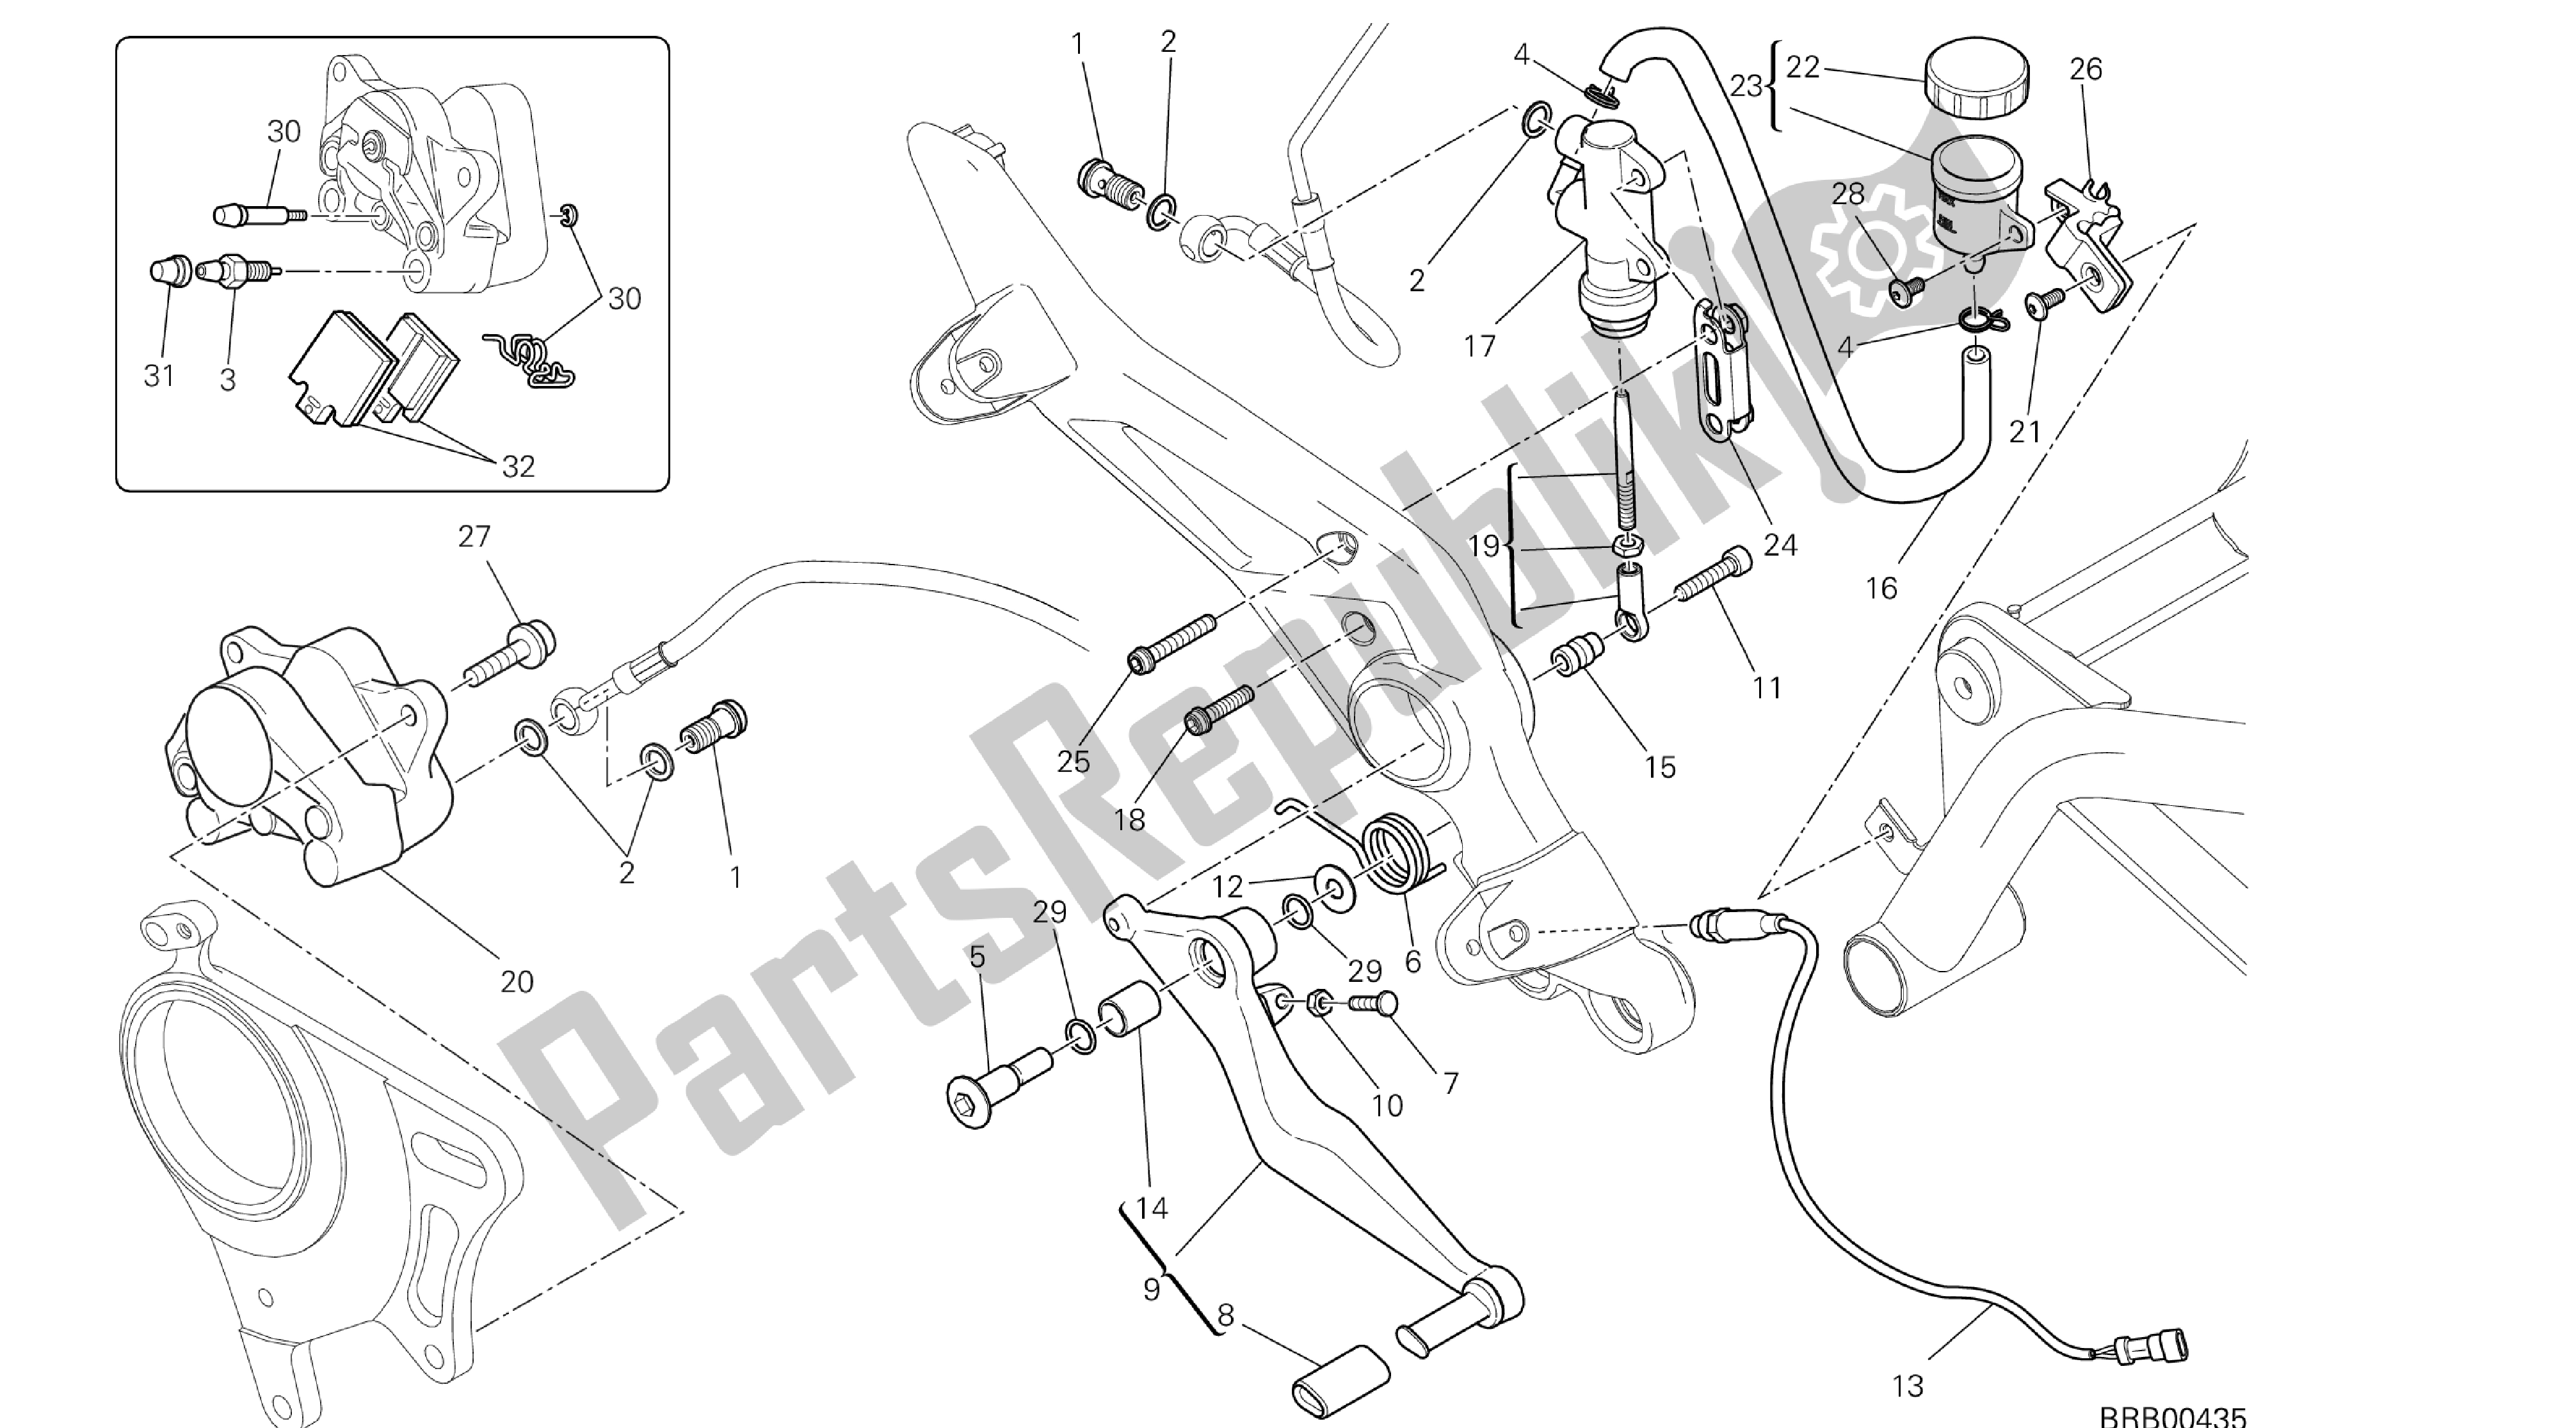 Toutes les pièces pour le Dessin 025 - Système De Freinage Arrière [x St: Cal, C Dn, Eur] Groupe Fr Ame du Ducati Hypermotard SP 821 2013